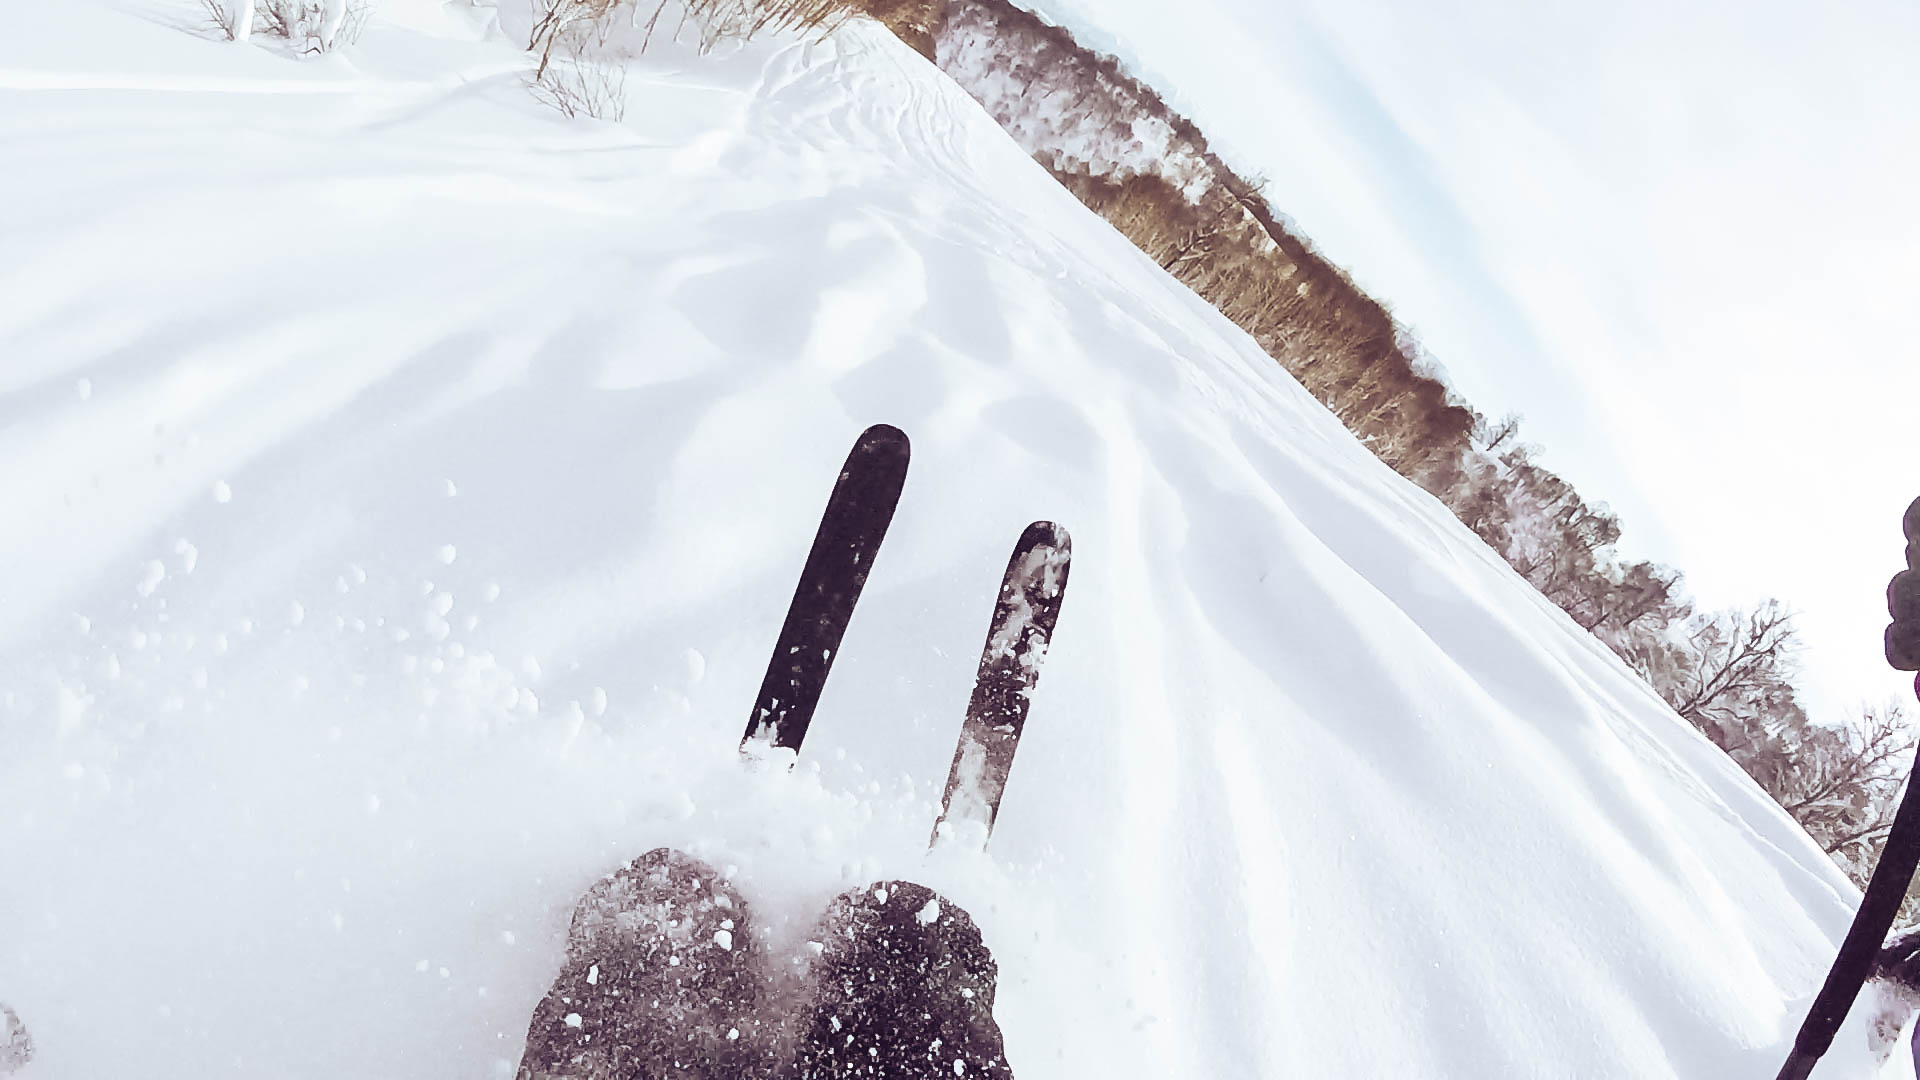 Nozawa Onsen Japan - Powder Skiing - GoPro